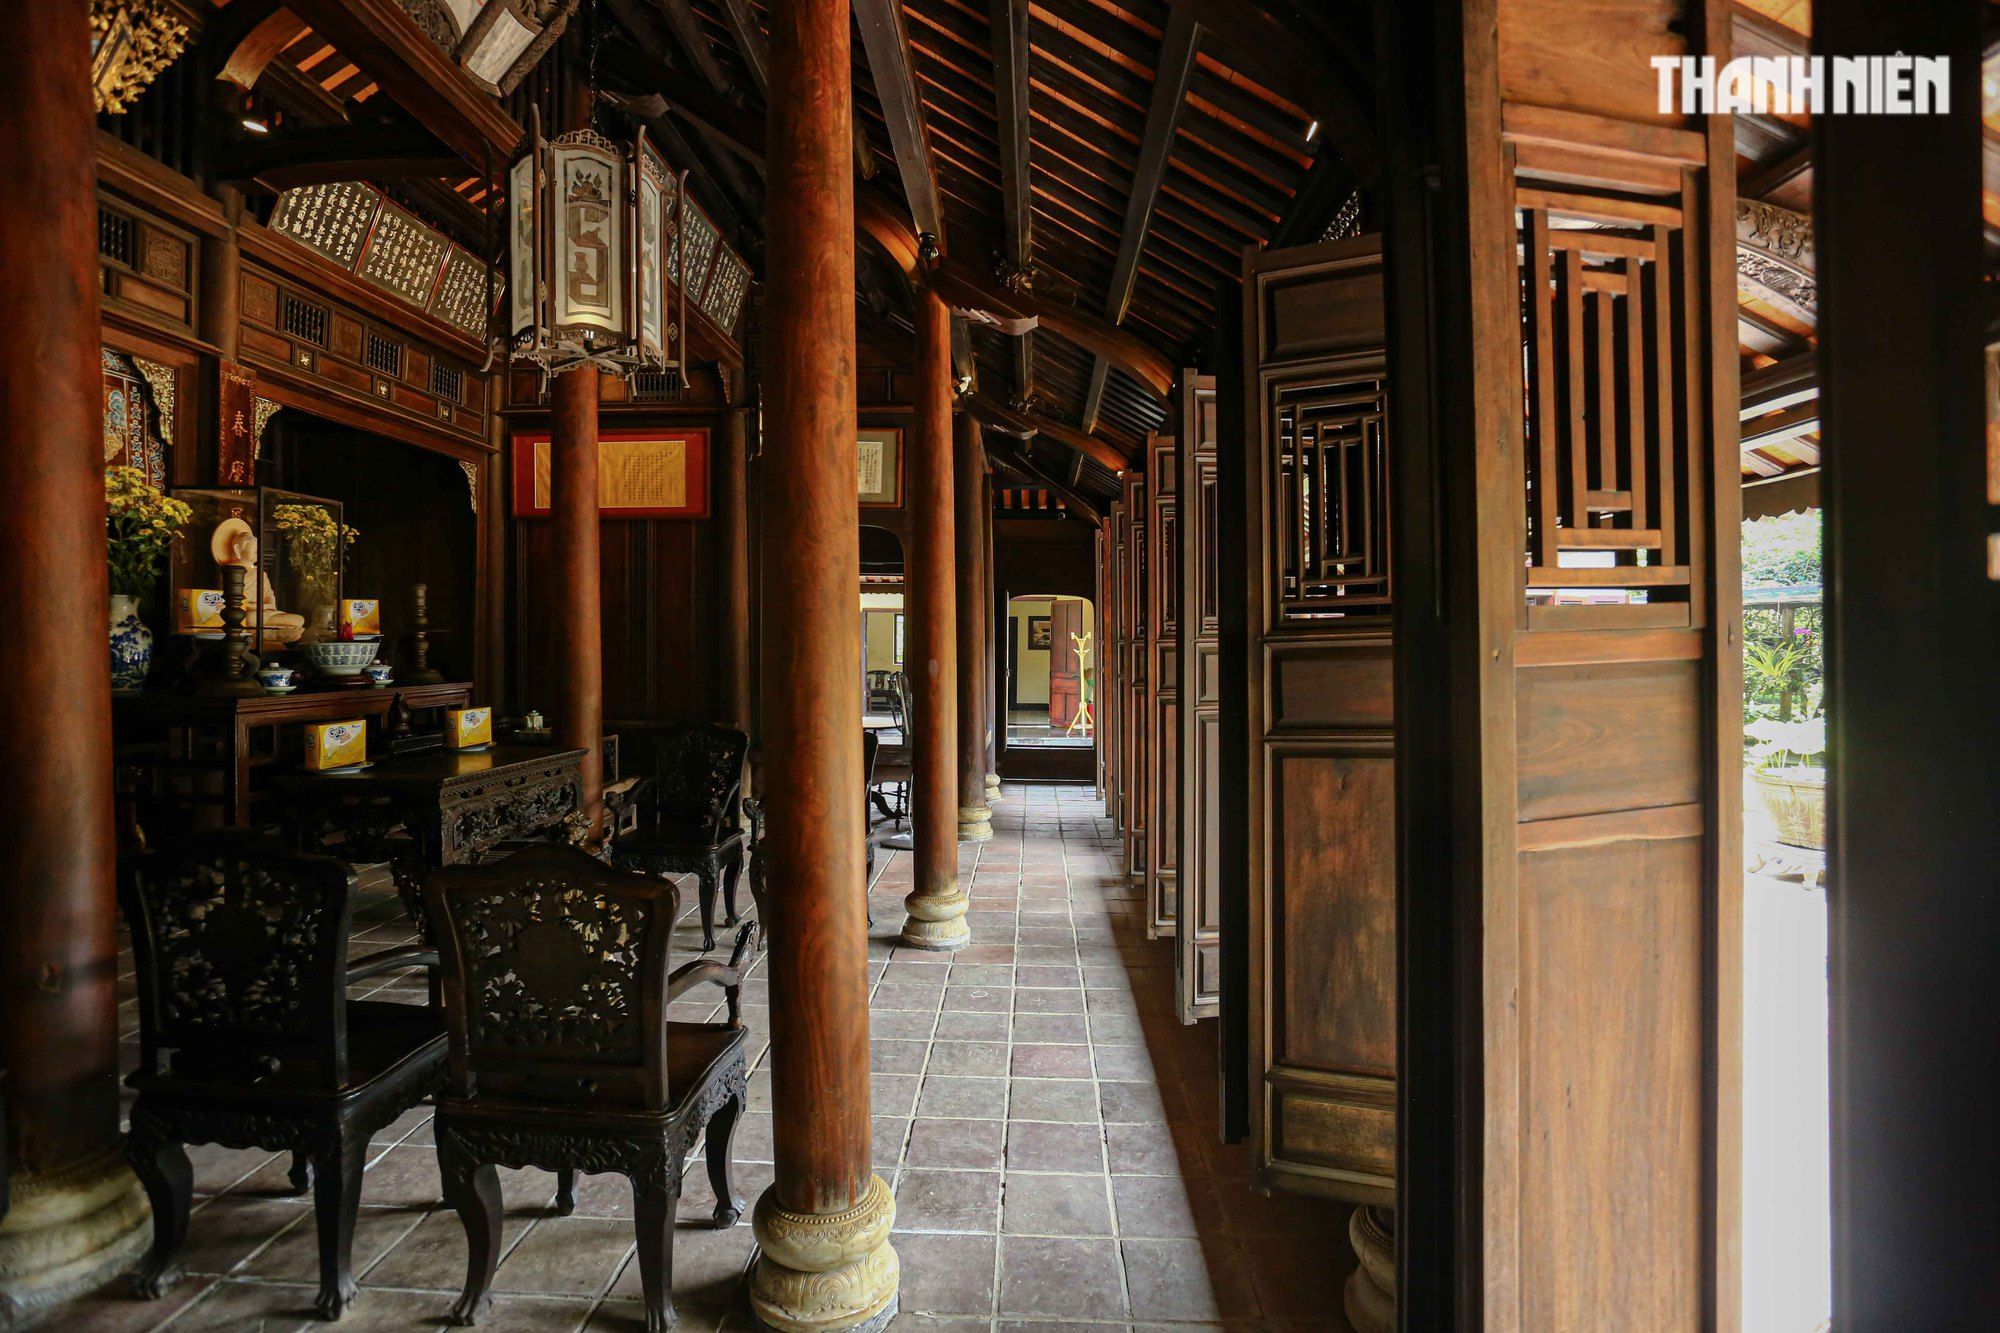 Vết thời gian trong nhà vườn 150 năm ở xứ Huế của công chúa triều Nguyễn